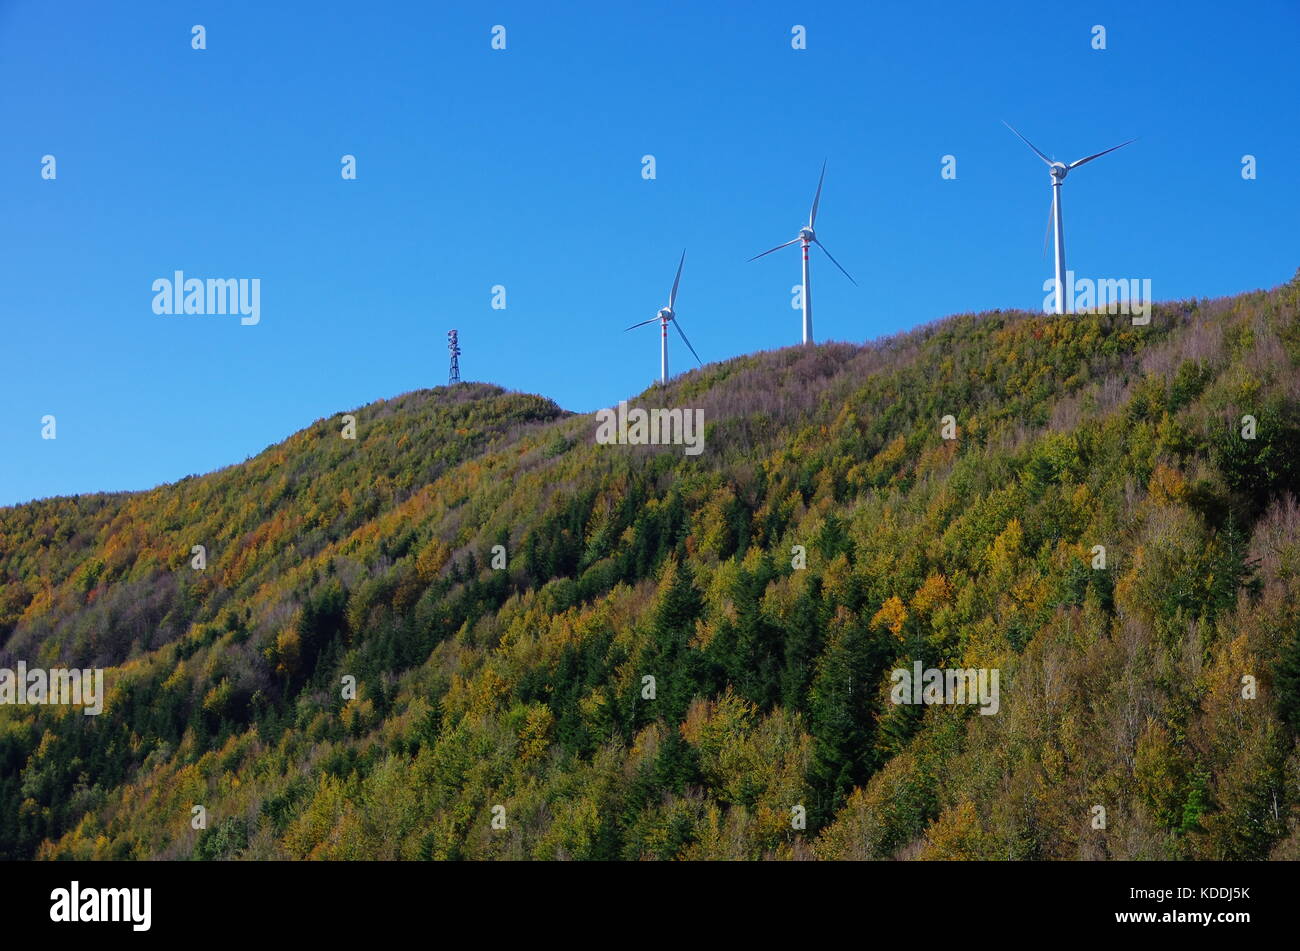 Éoliennes sur le sommet du mont secchieta en toscane, italie Banque D'Images